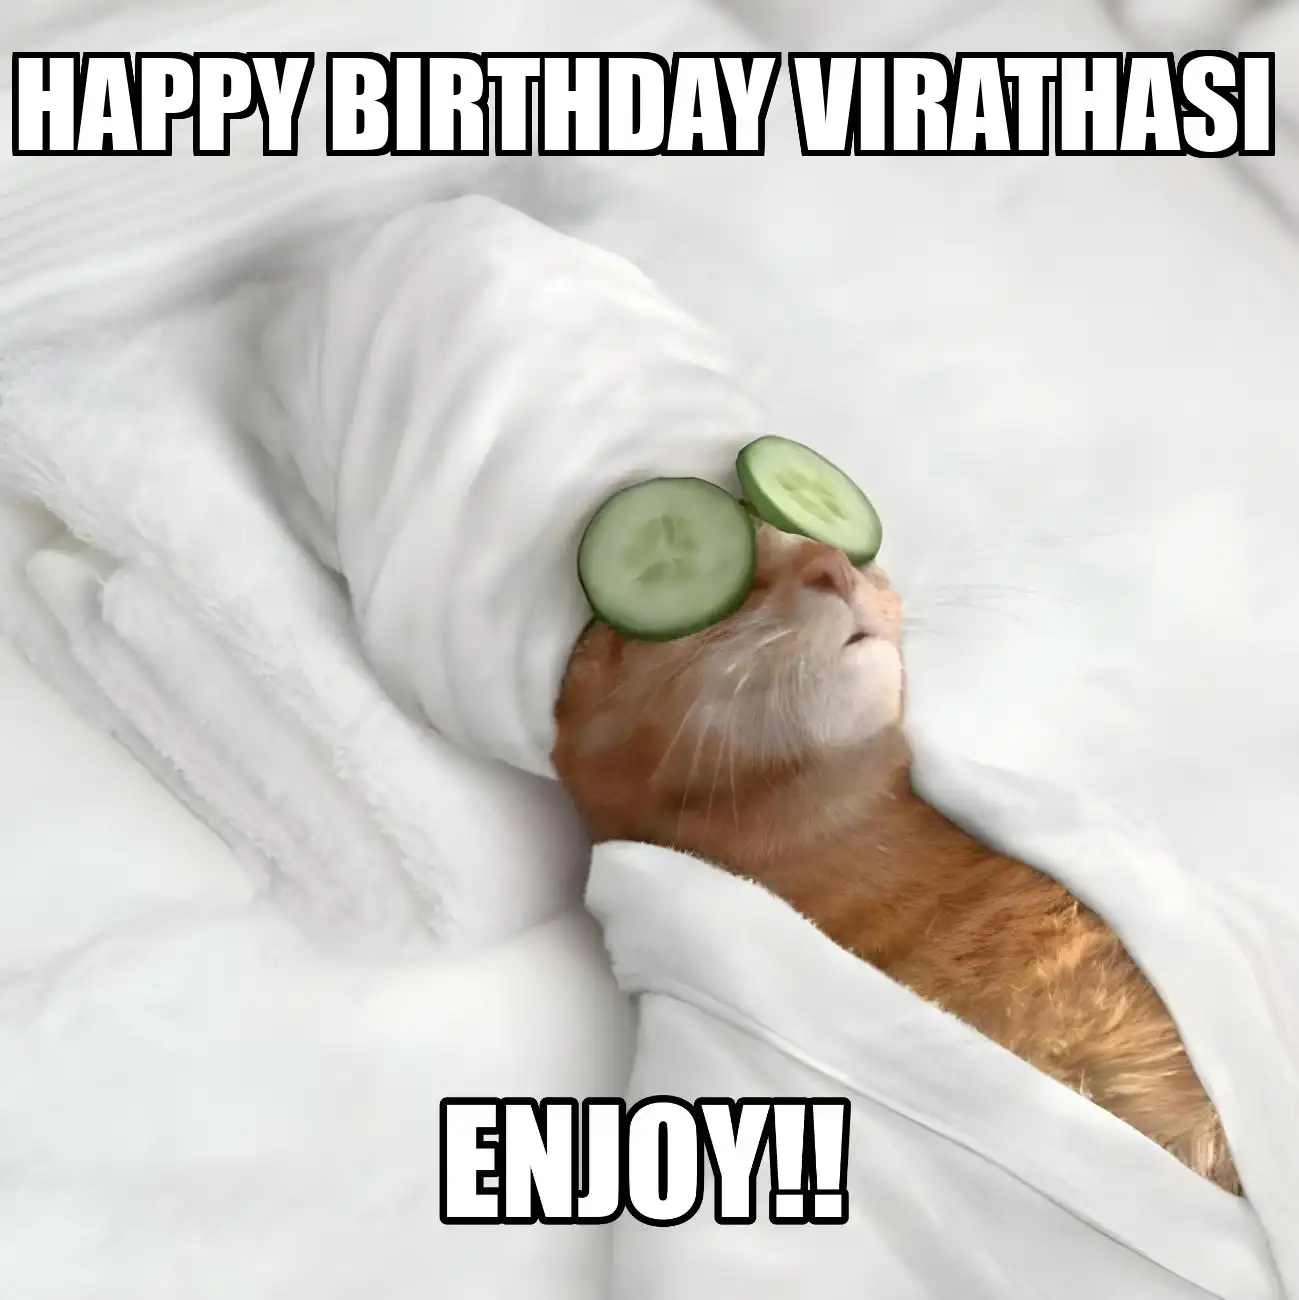 Happy Birthday Virathasi Enjoy Cat Meme